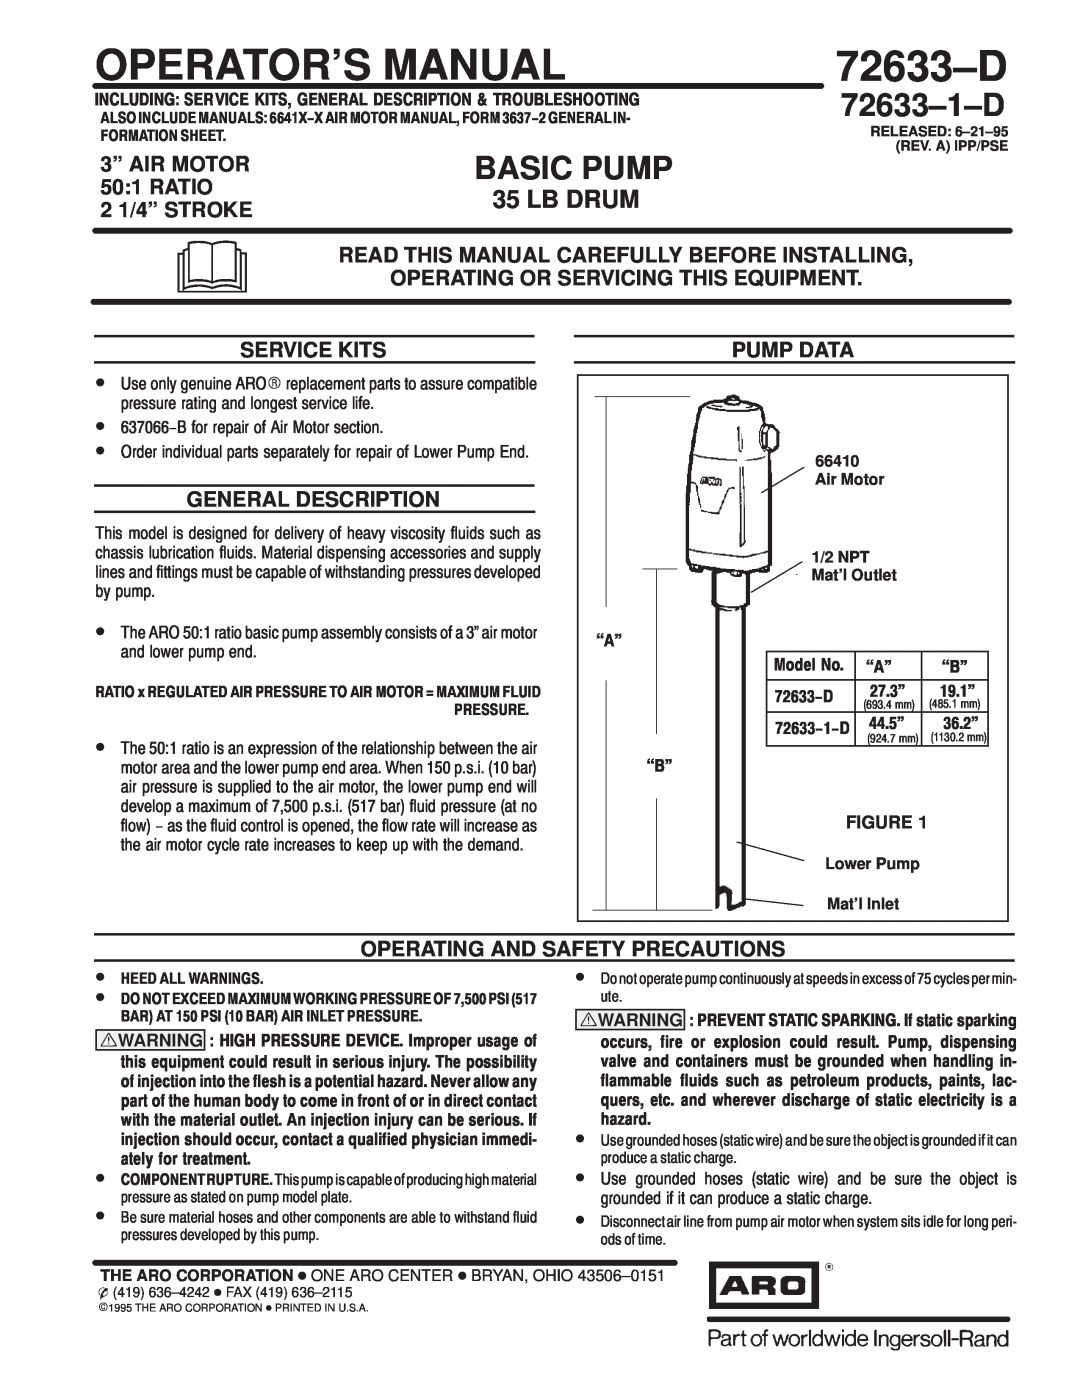 Ingersoll-Rand 72633-D manual 3º AIR MOTOR, Ratio, 2 1/4º STROKE, Service Kits, General Description, Pump Data, 72633±D 